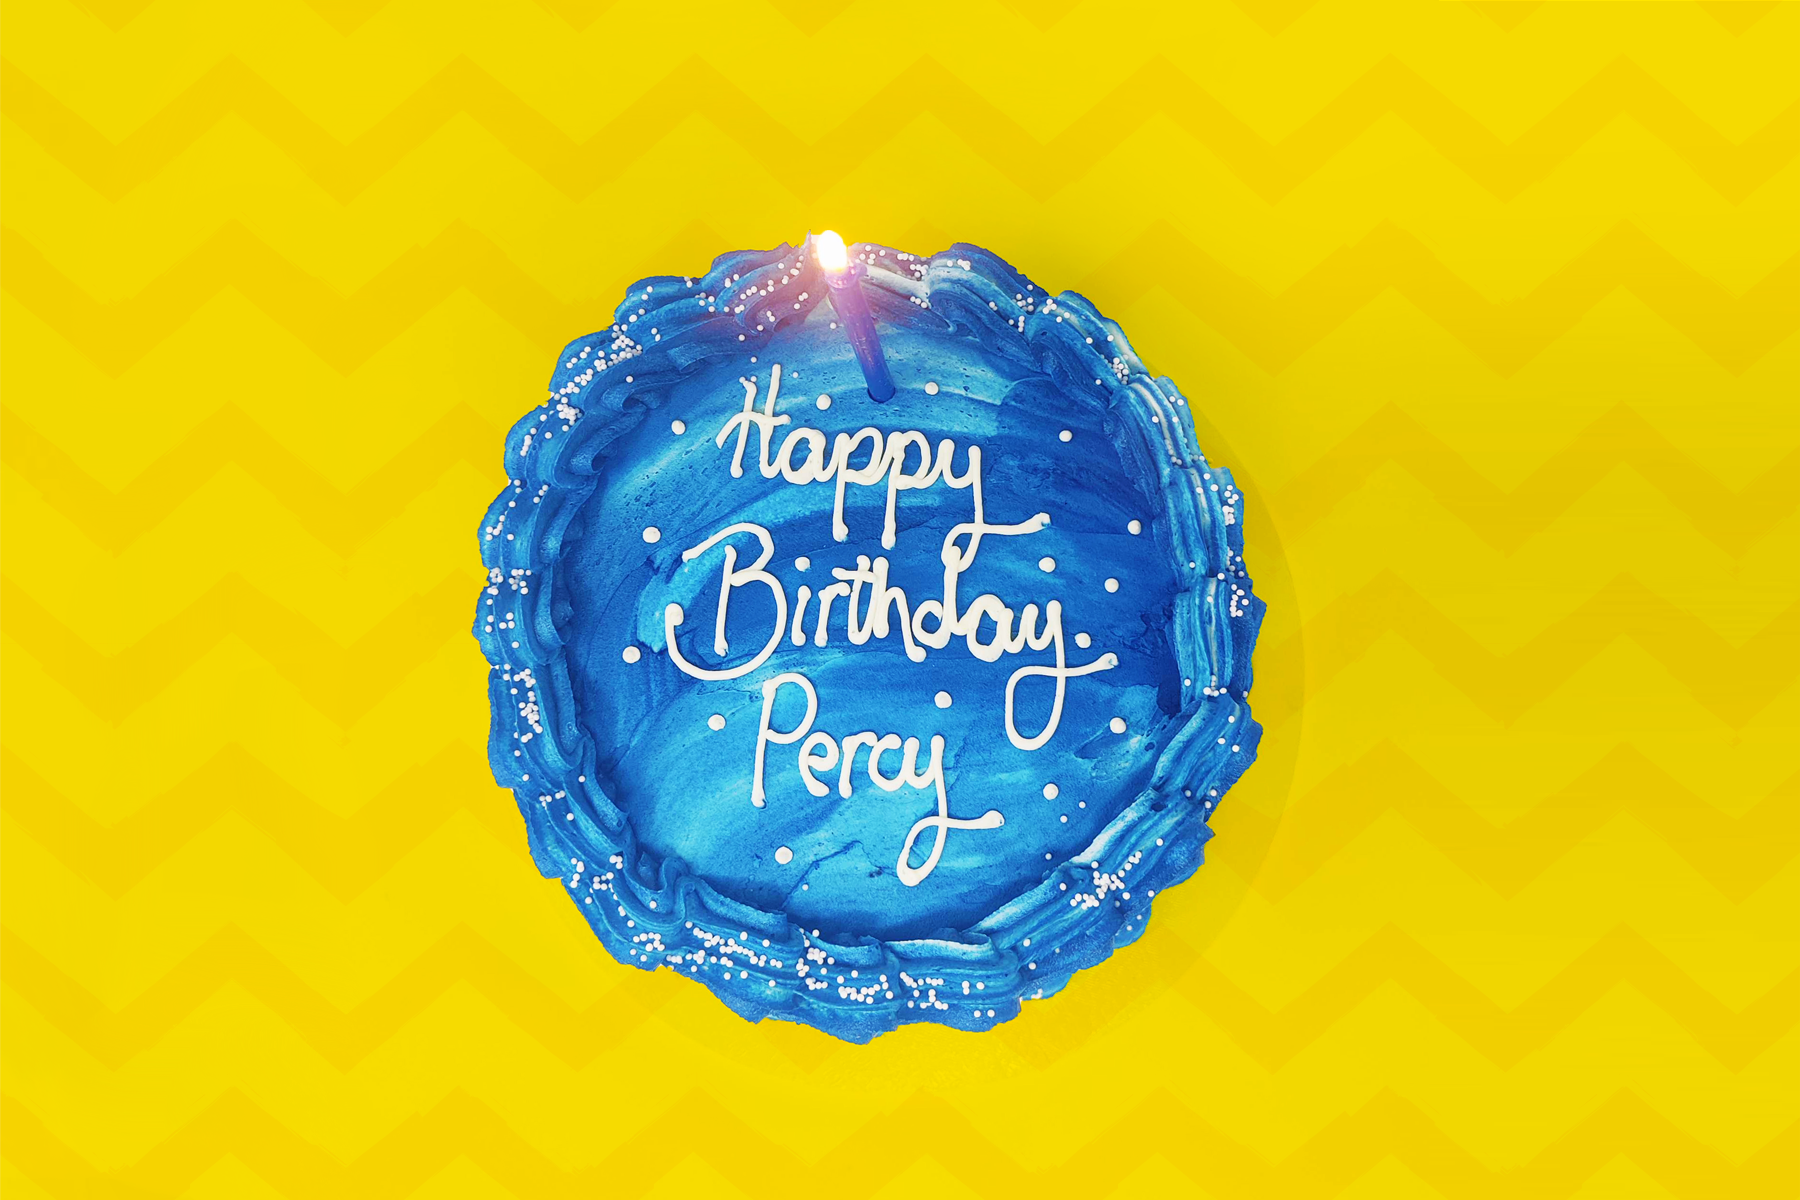 Bánh sinh nhật cảm hứng từ Percy Jackson là một tác phẩm nghệ thuật đầy màu sắc và độc đáo. Bạn có muốn khám phá bánh này và xem nó ở đâu không? Hãy đến và chiêm ngưỡng bữa tiệc sinh nhật đầy phép thuật với những chi tiết tinh tế và phải lòng từ bộ truyện Percy Jackson nào!